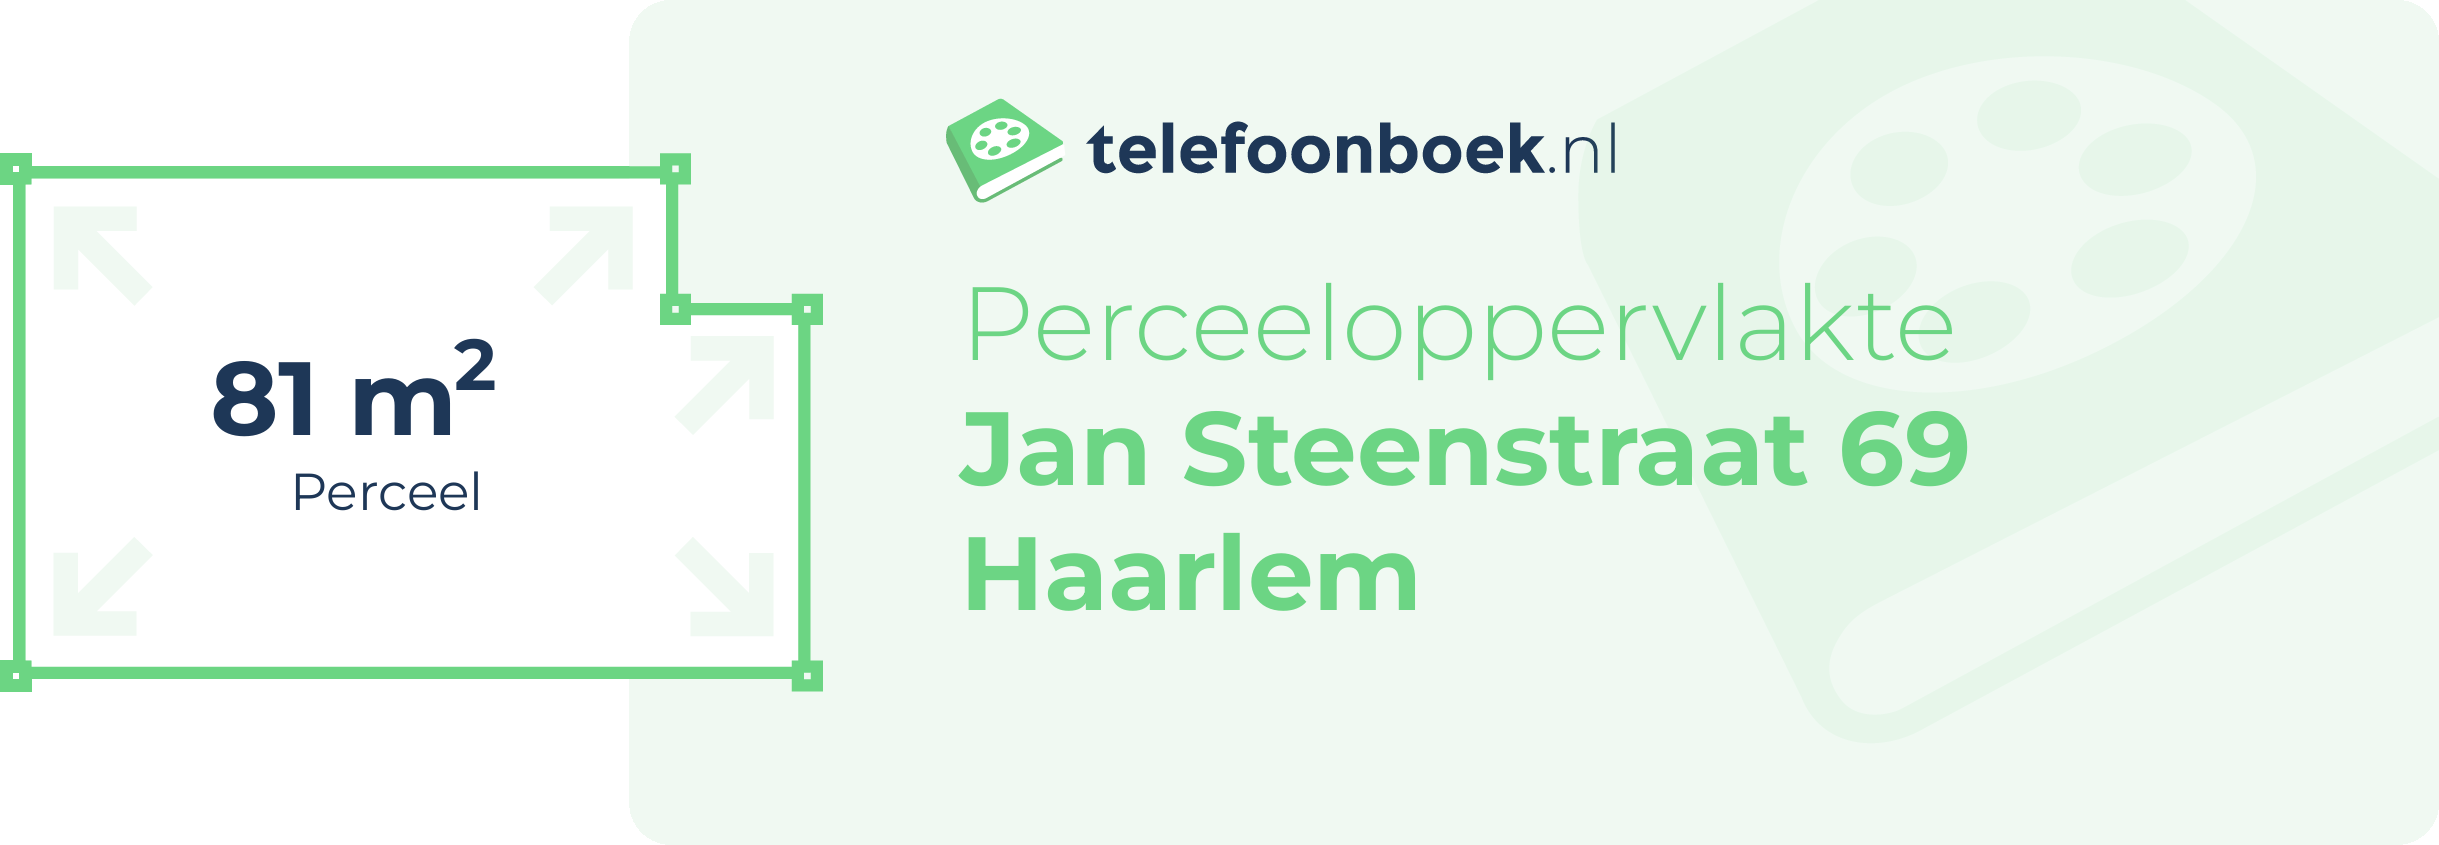 Perceeloppervlakte Jan Steenstraat 69 Haarlem